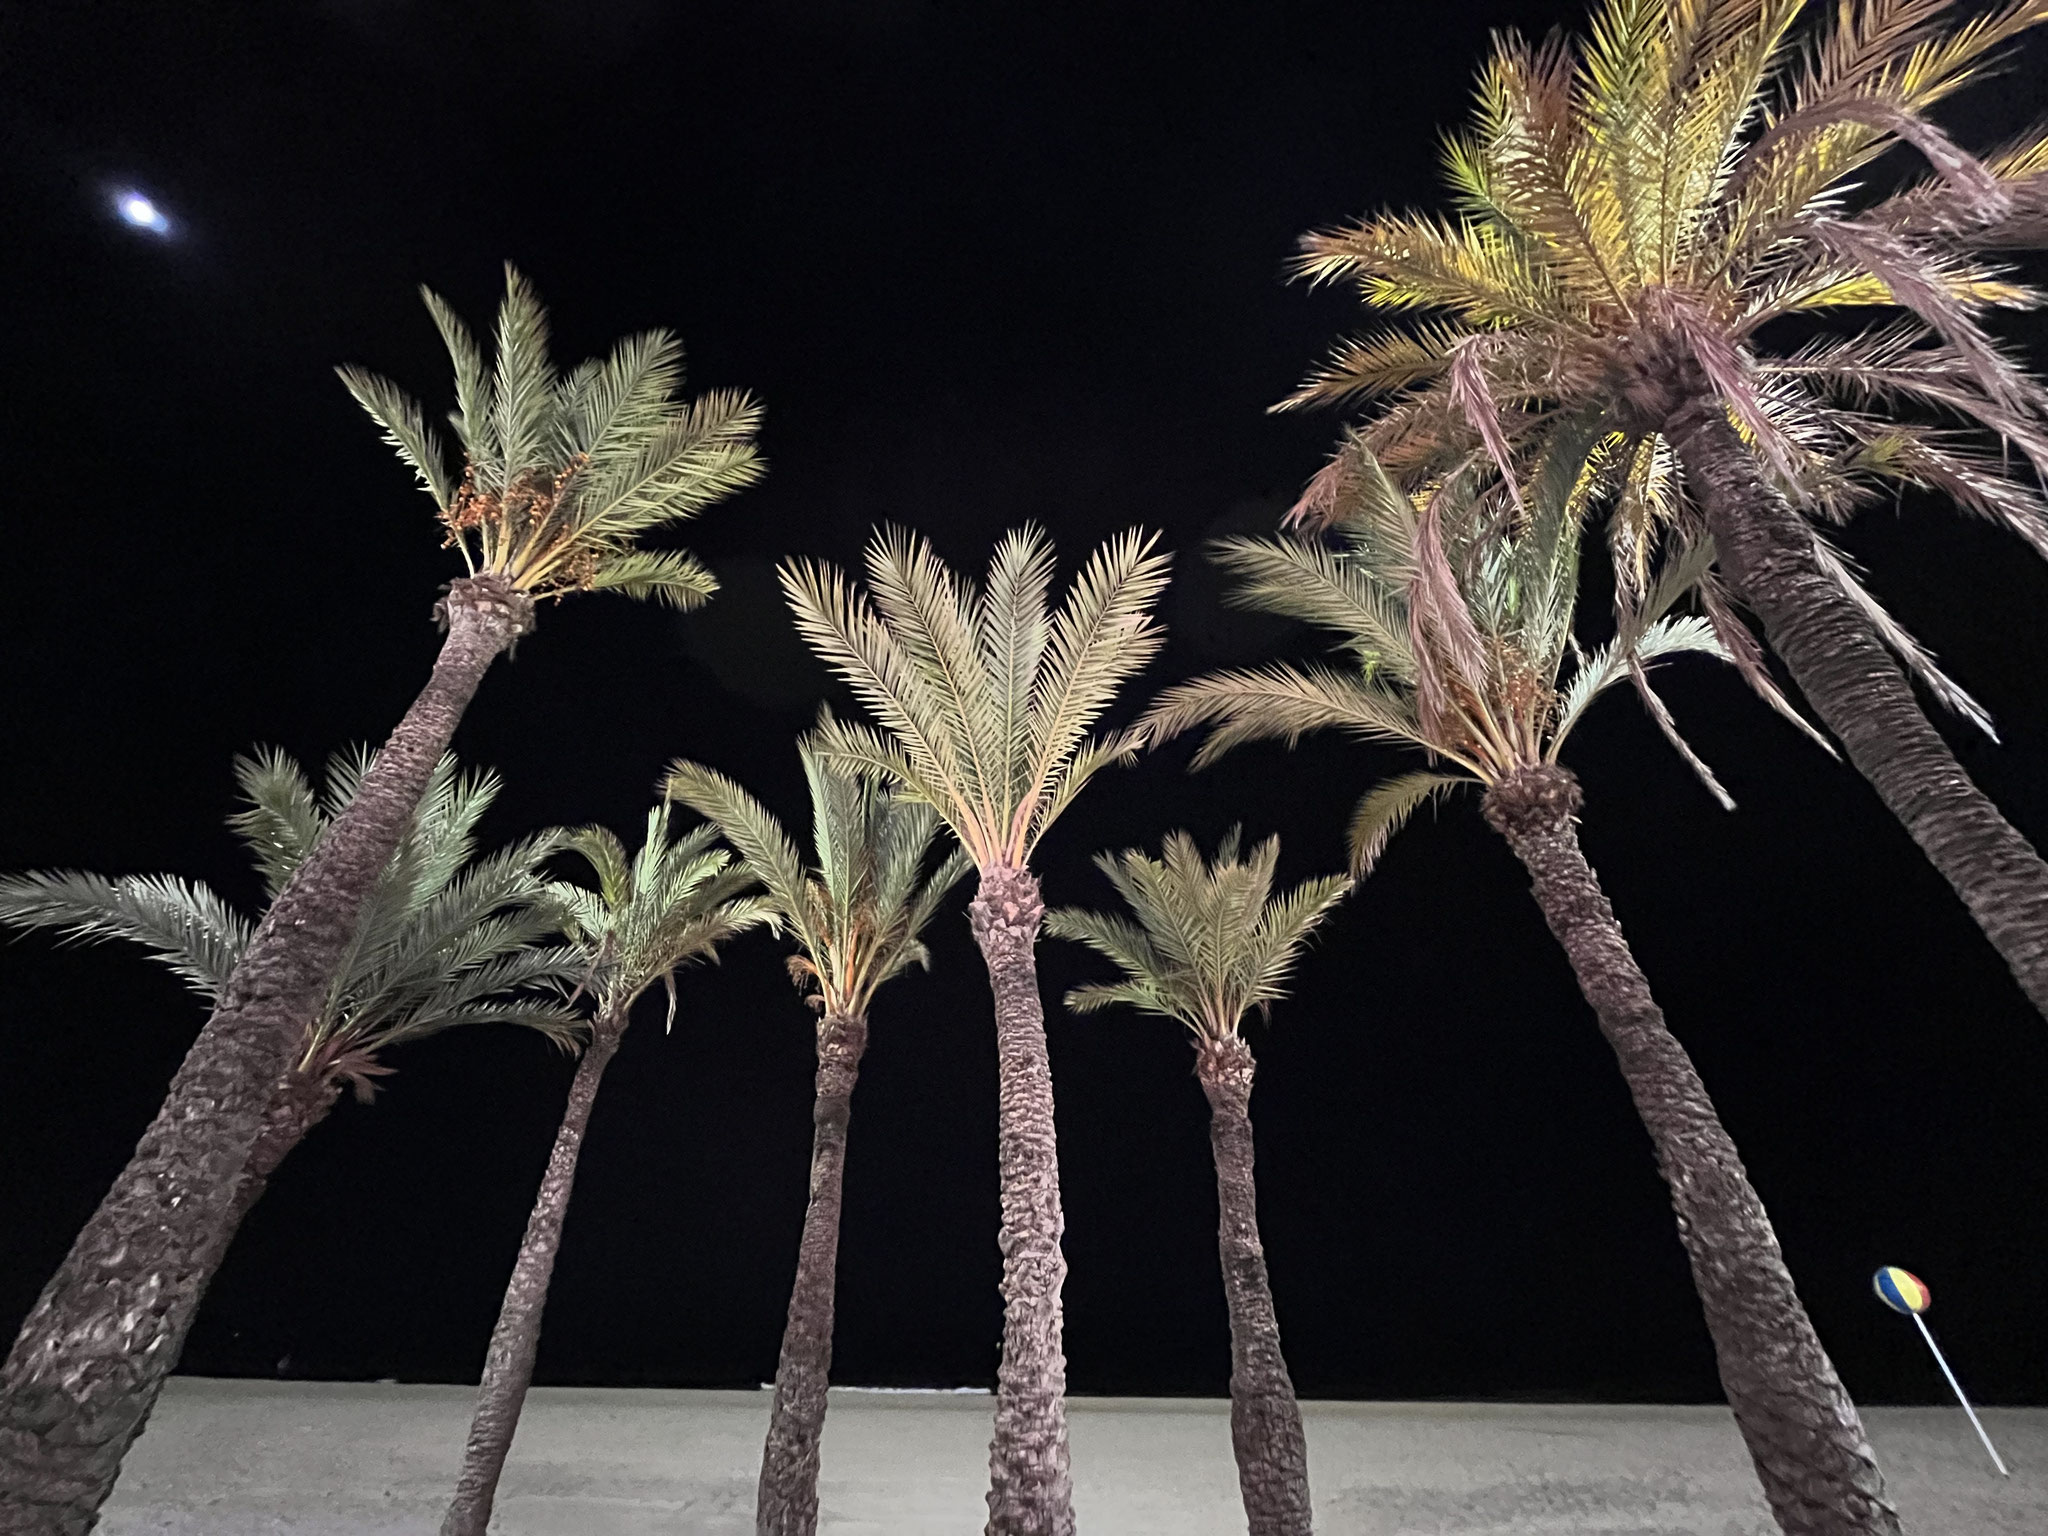 Es ist dunkel und es wird schnell kühl. Am Strand herrscht mit der Beleuchtung und den Palmen ein herrliches Bild. 